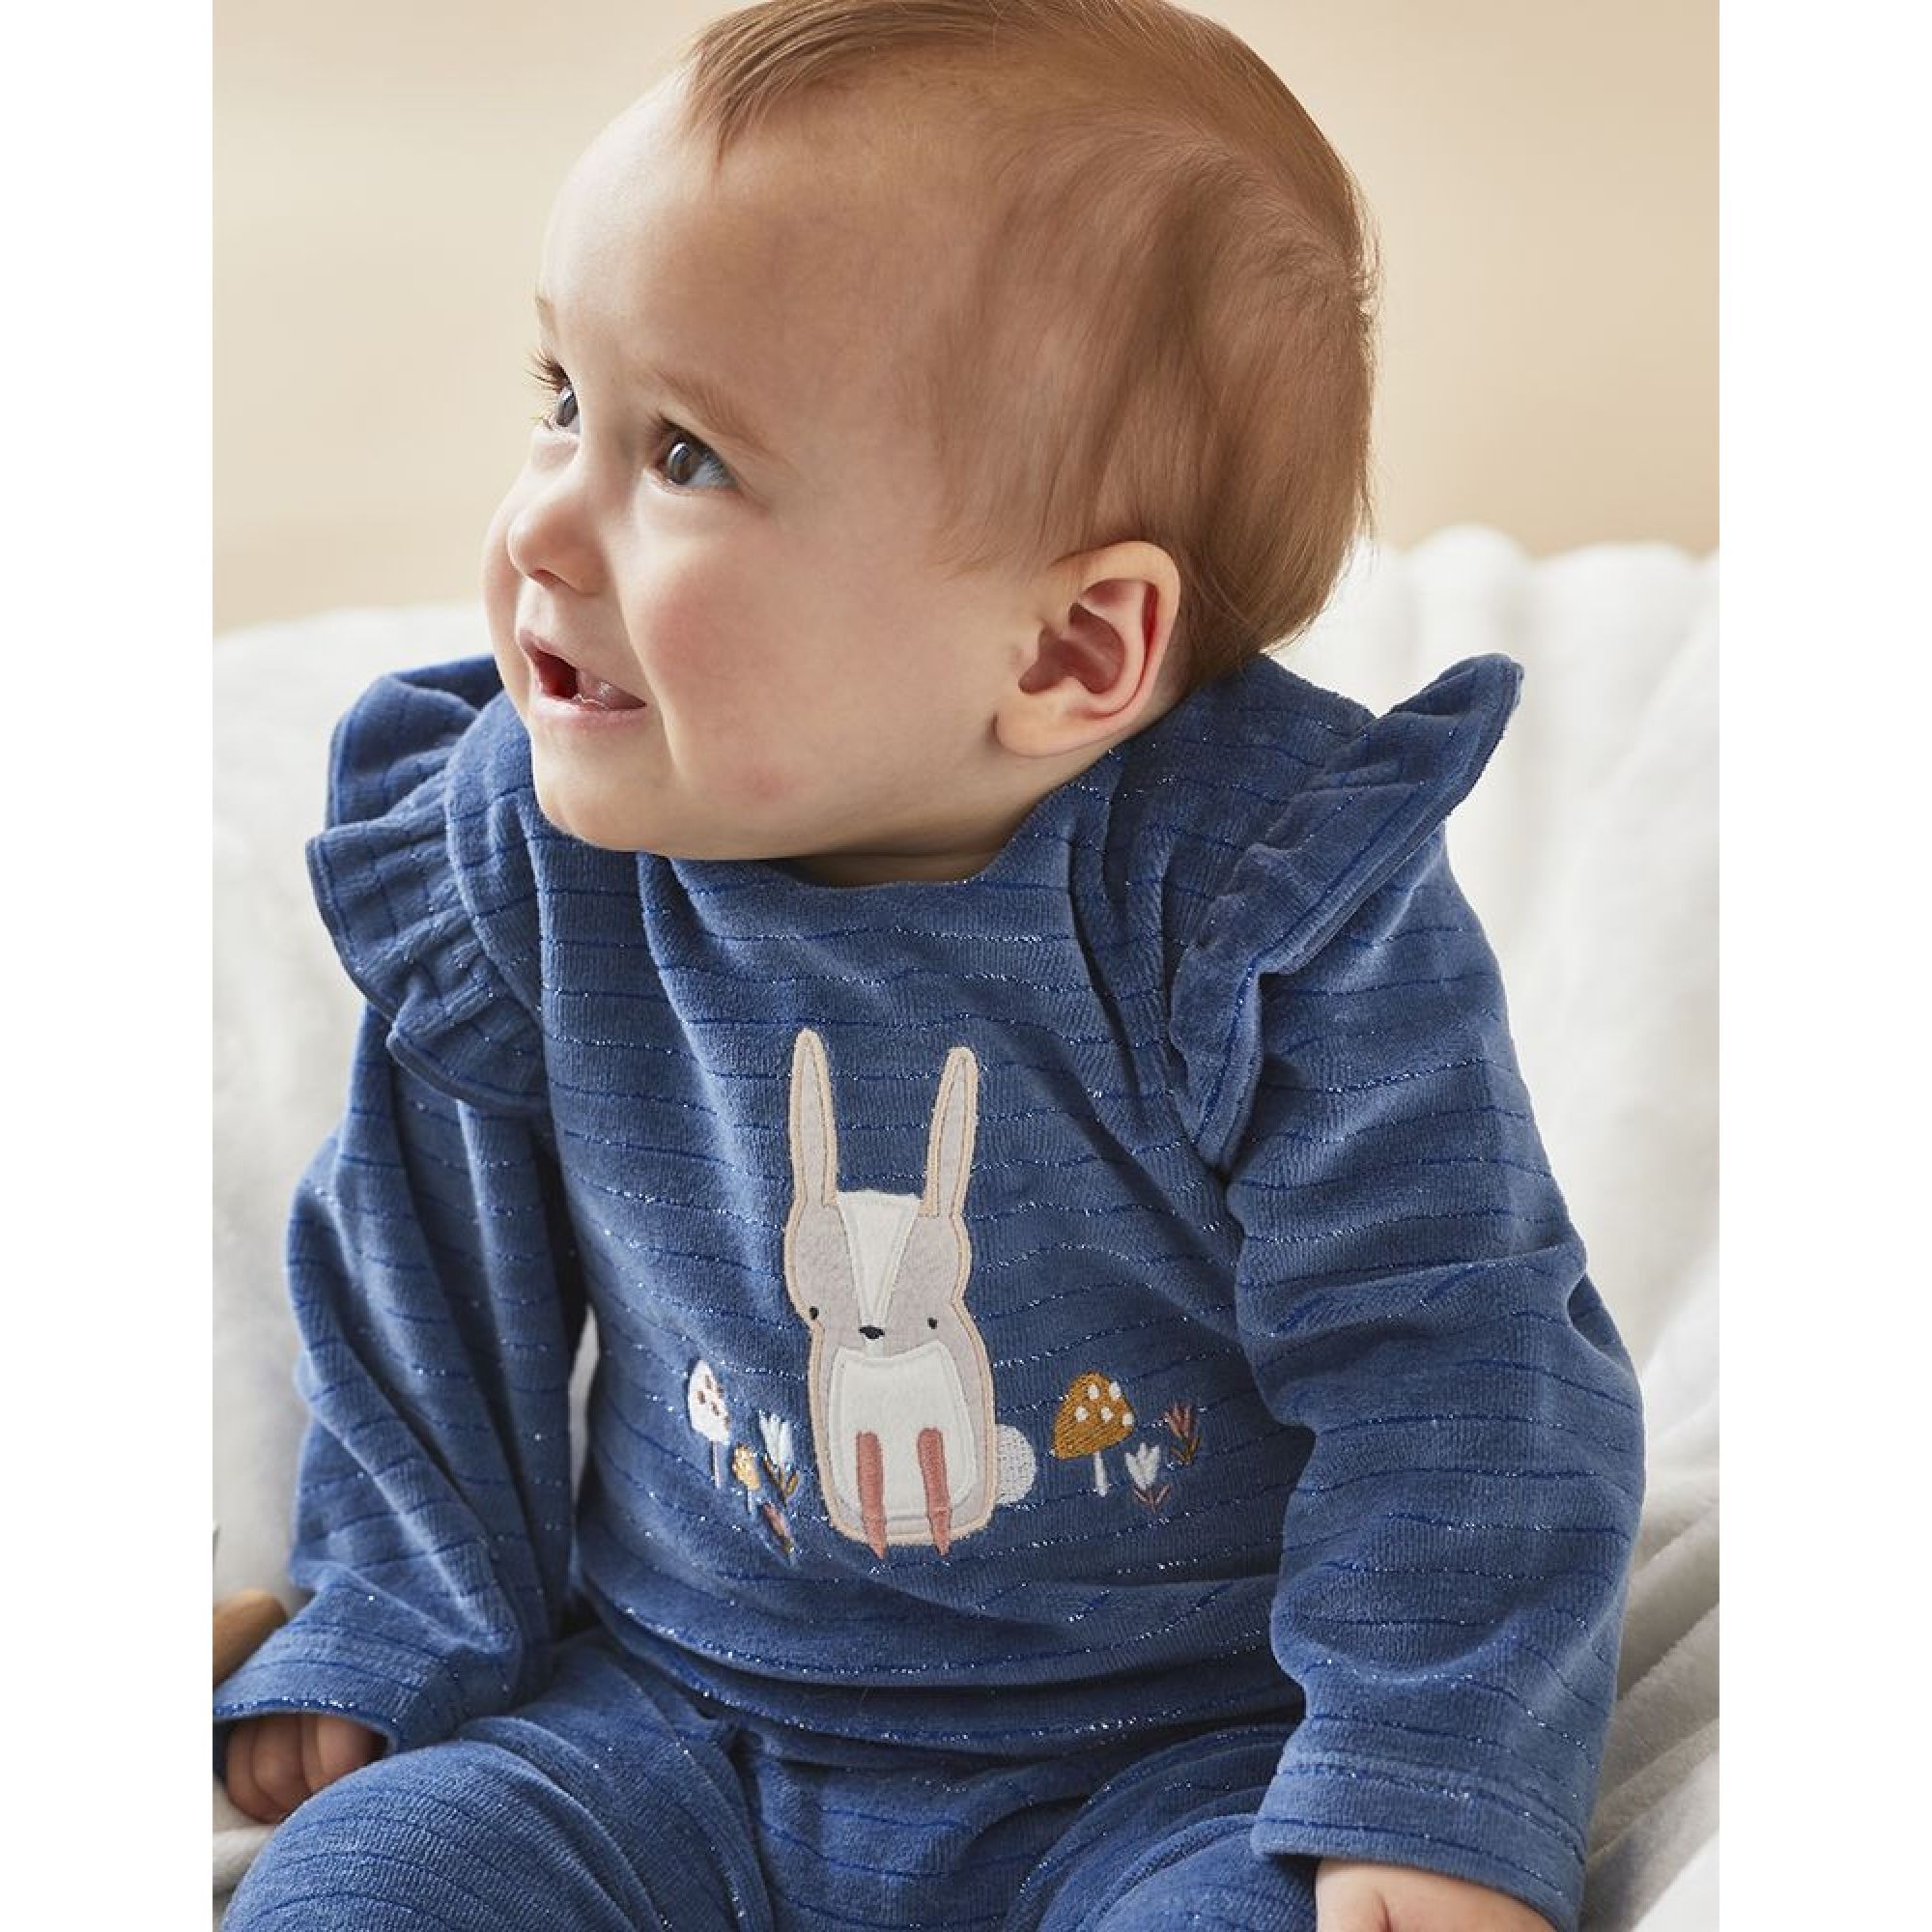 Doudou bébé brodé lapin personnalisé bleu nuit étoilé au prénom de l'enfant